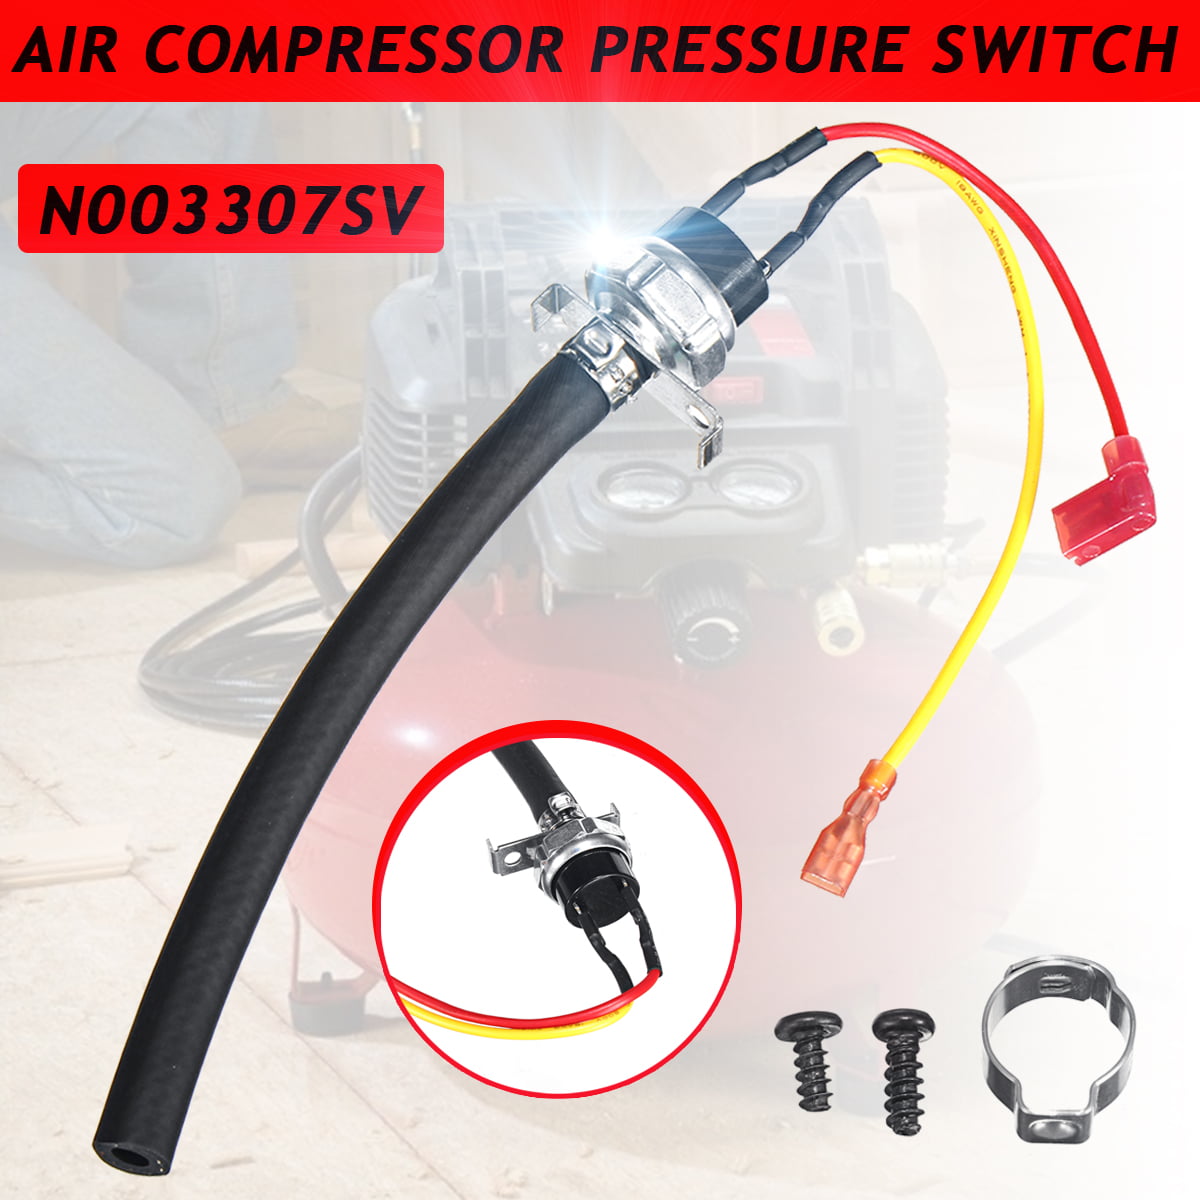 N003307SV Air Compressor Pressure Switch Regulator Gauges Safety Valve 